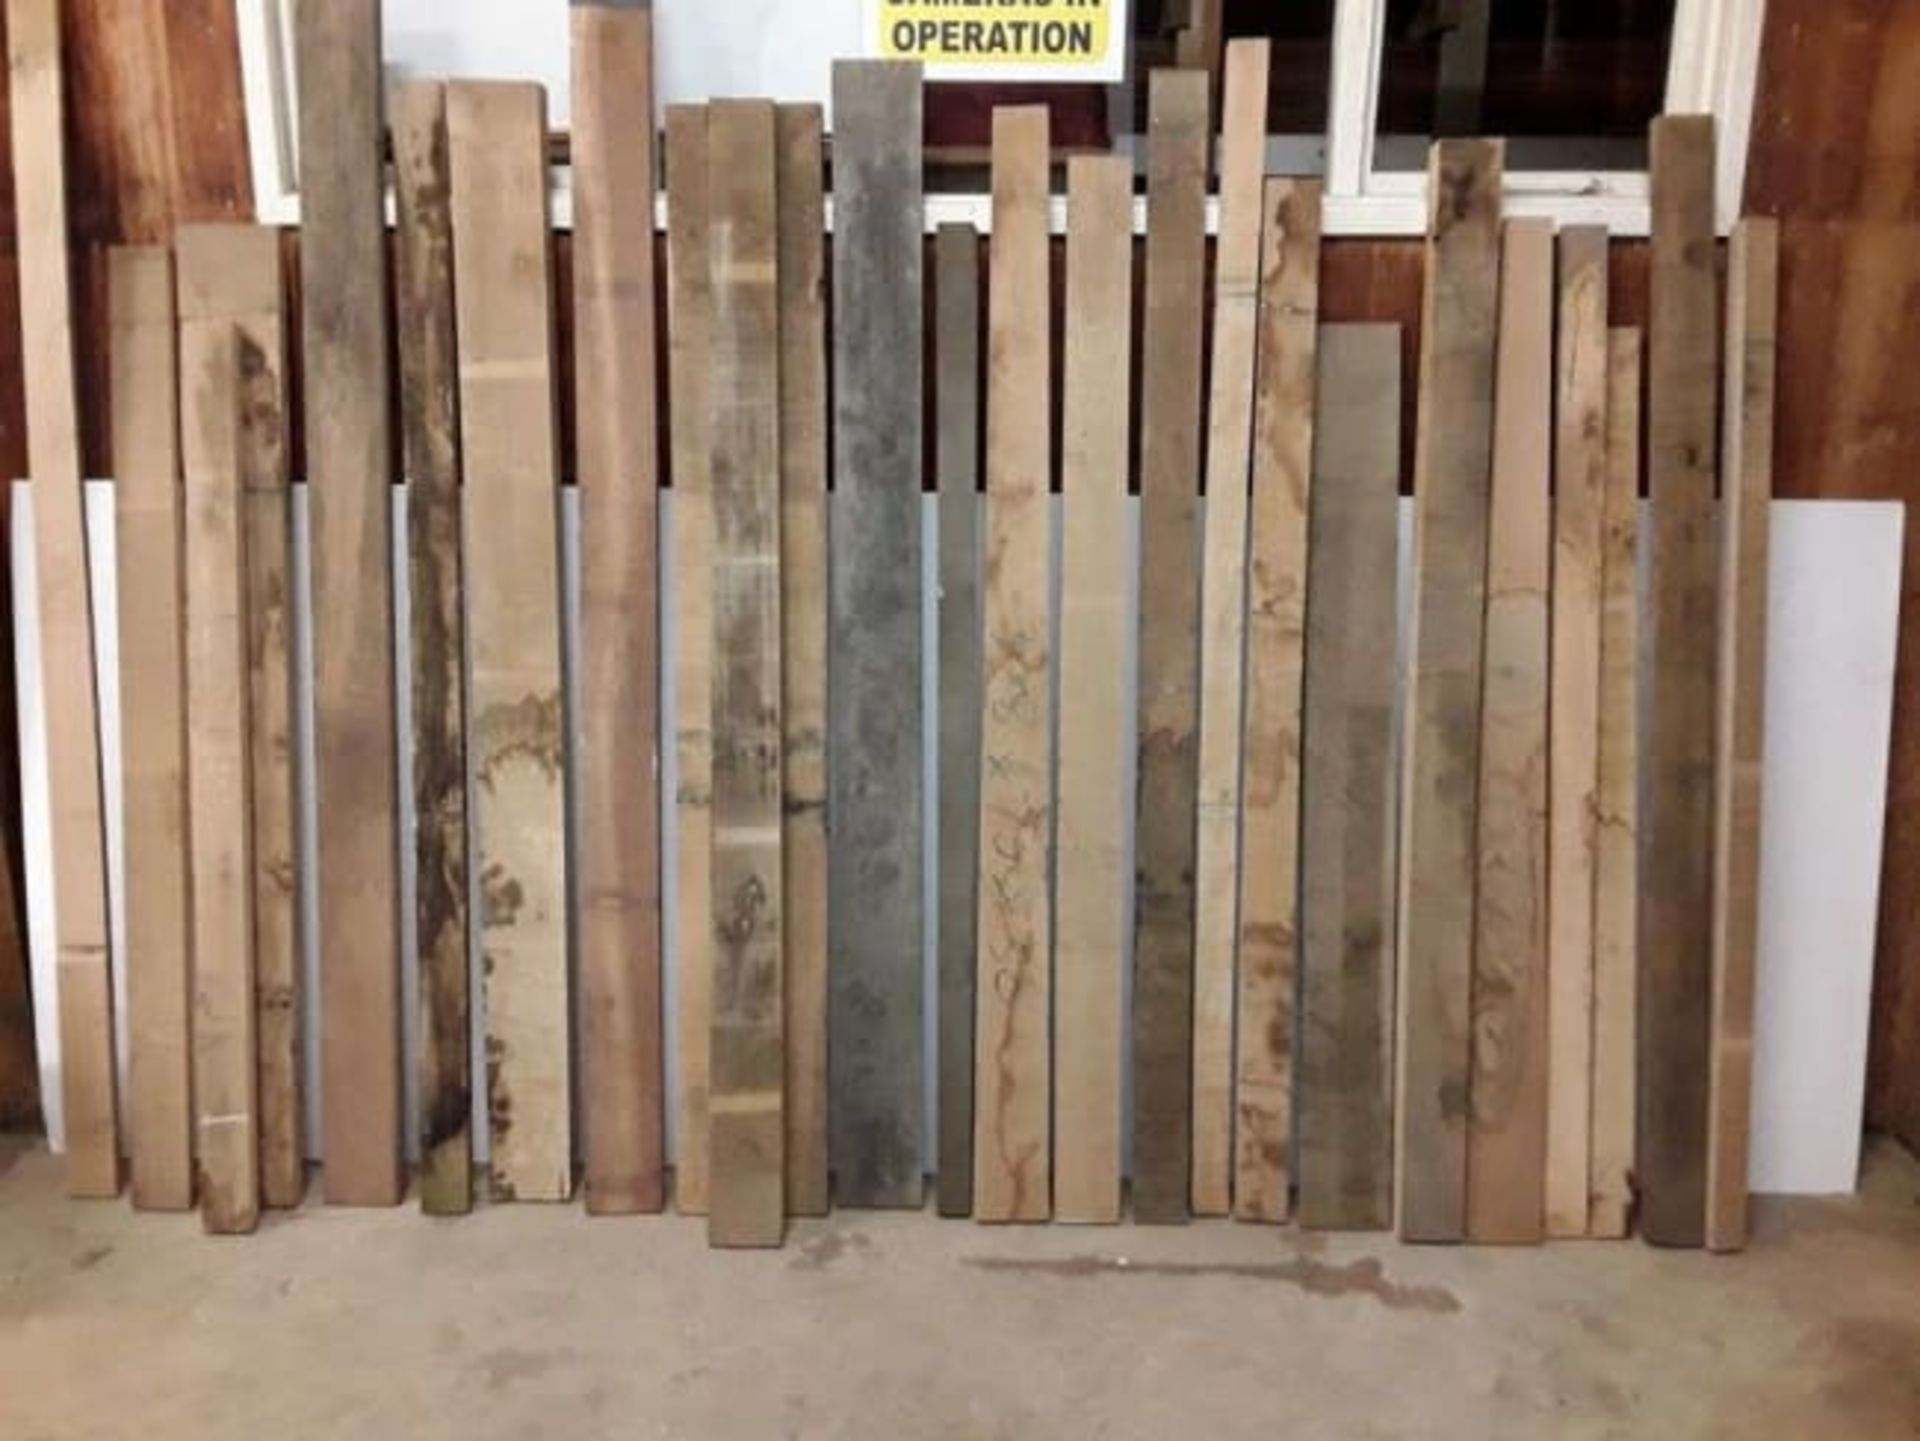 25x Hardwood Kiln Dried Sawn English Oak Boards / Planks / Timber Offcuts